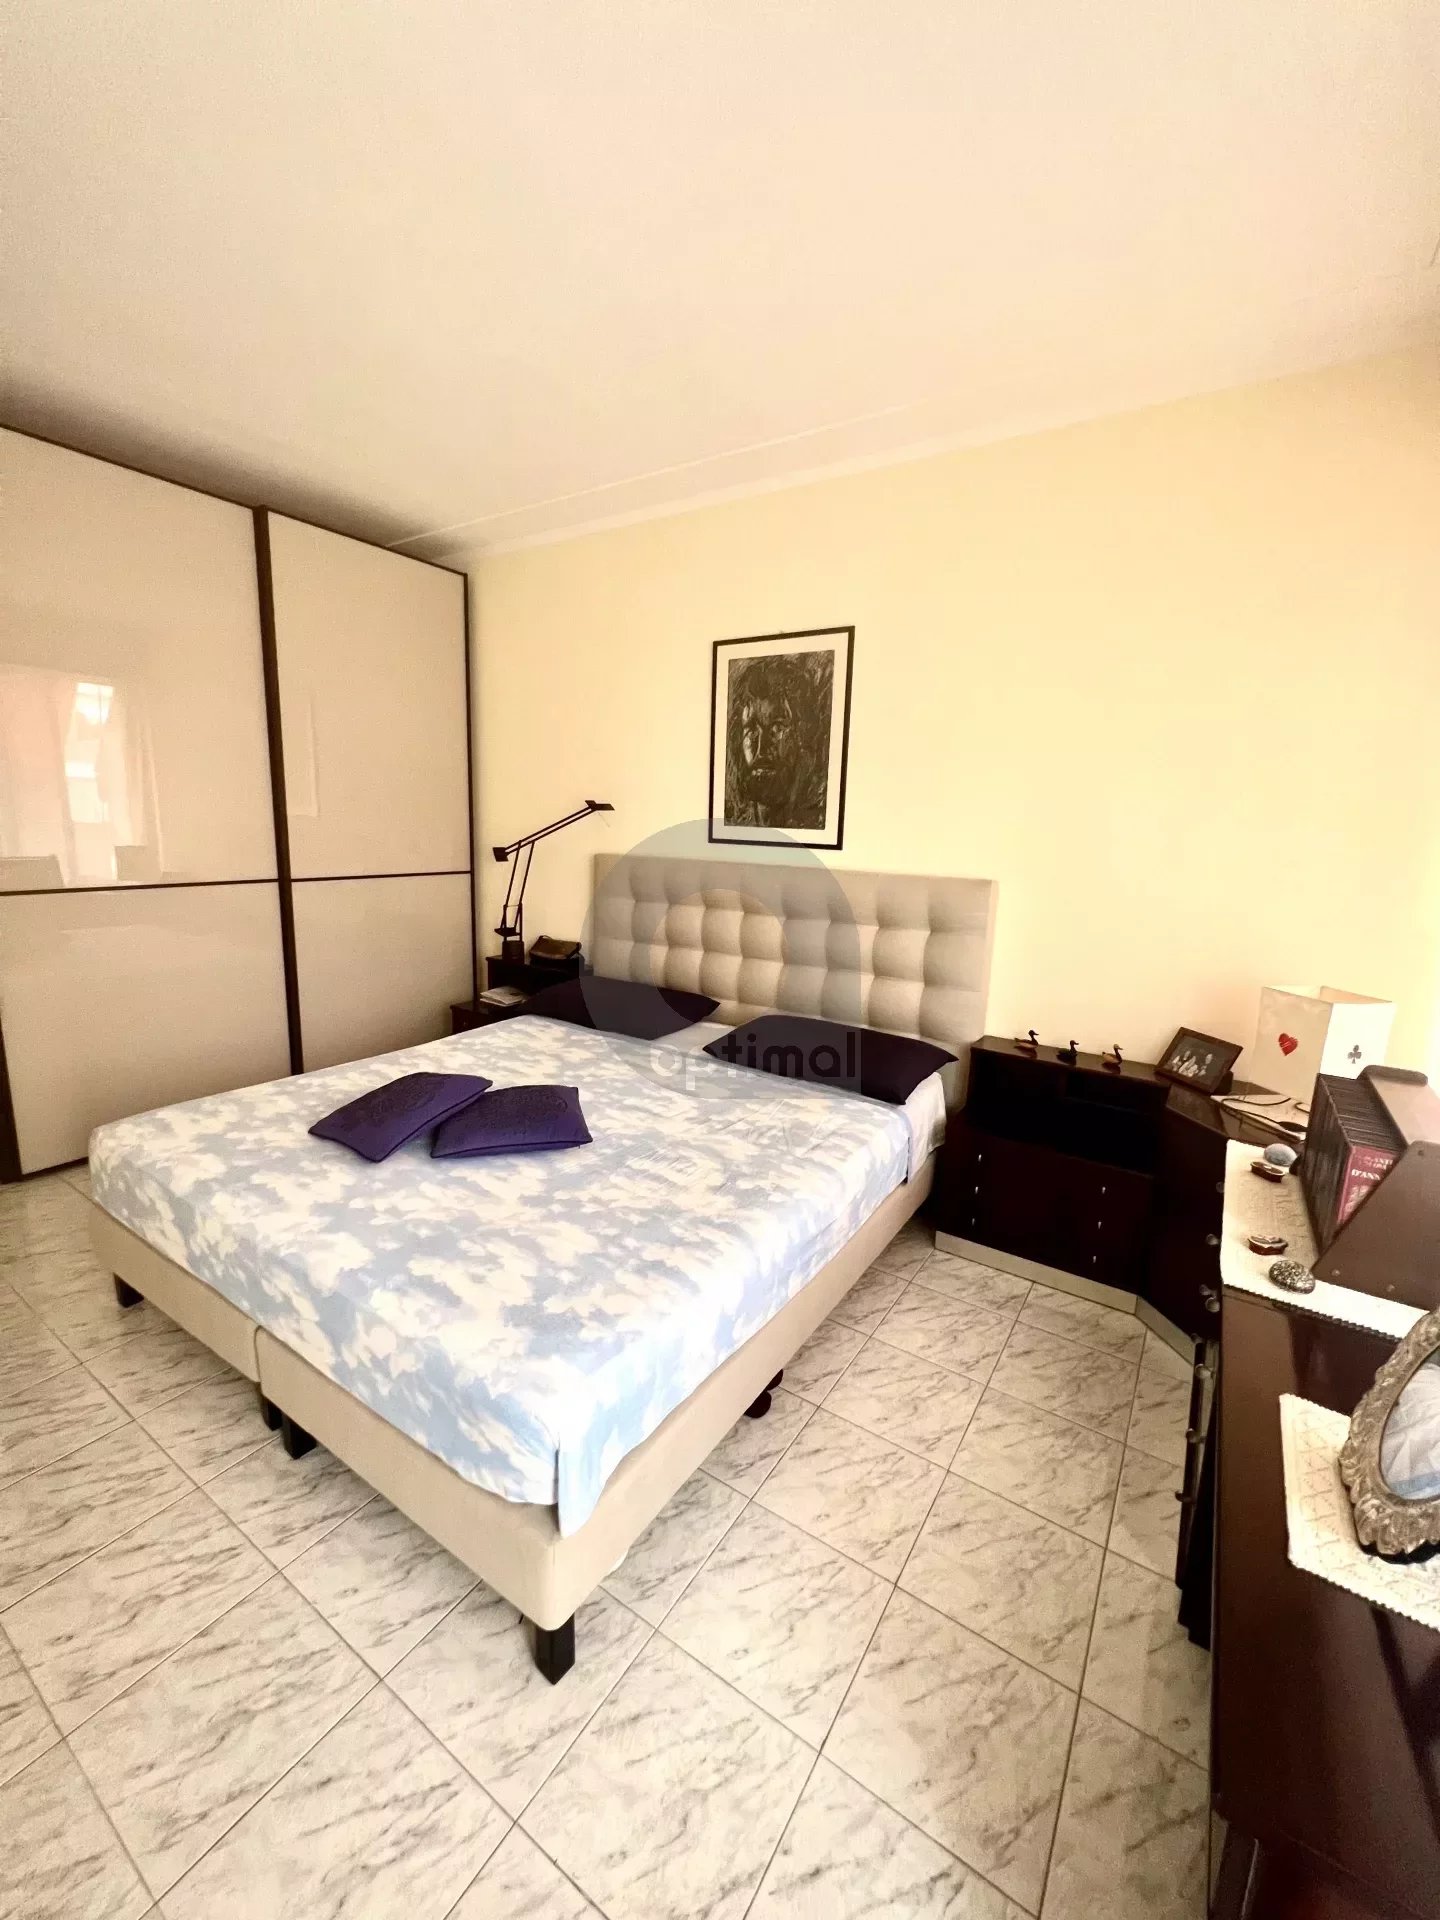 Menton Garavan - Flat 59.11 m² with bedroom, terrass and cellar - parking in option